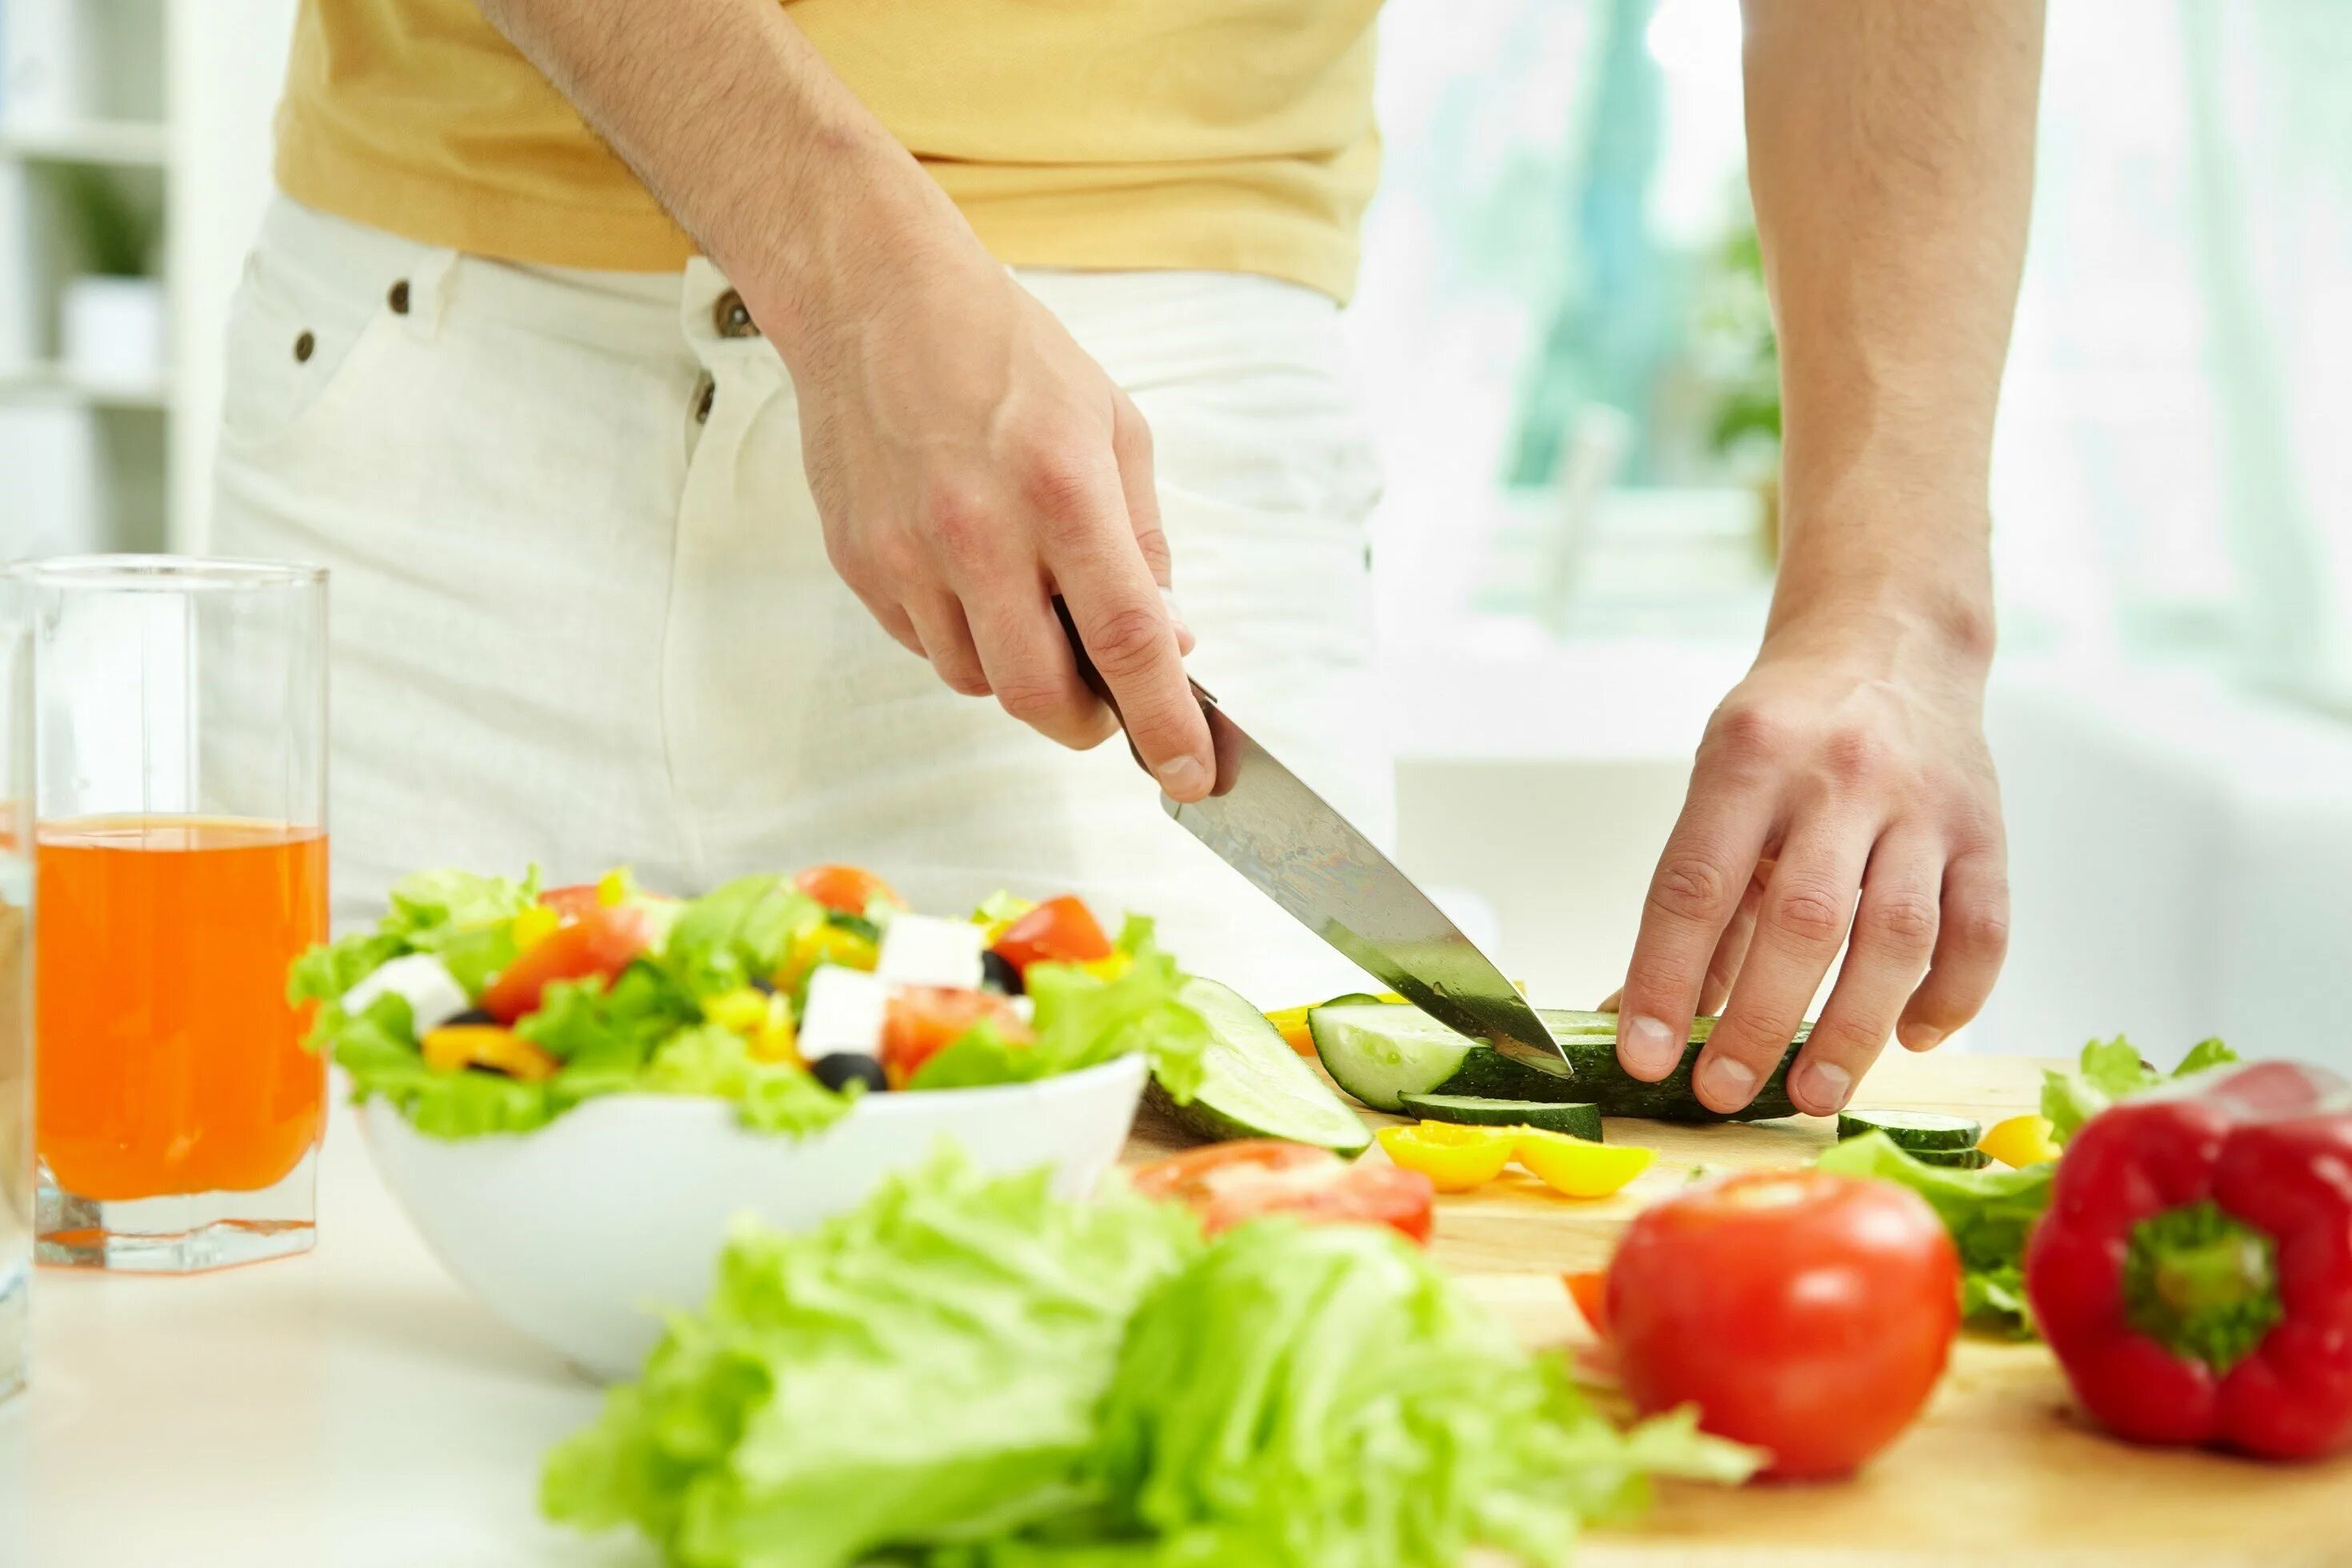 Нарезание овощей. Подготовка продуктов. Правильное приготовление пищи. Нарезанные овощи. Нож режет овощи